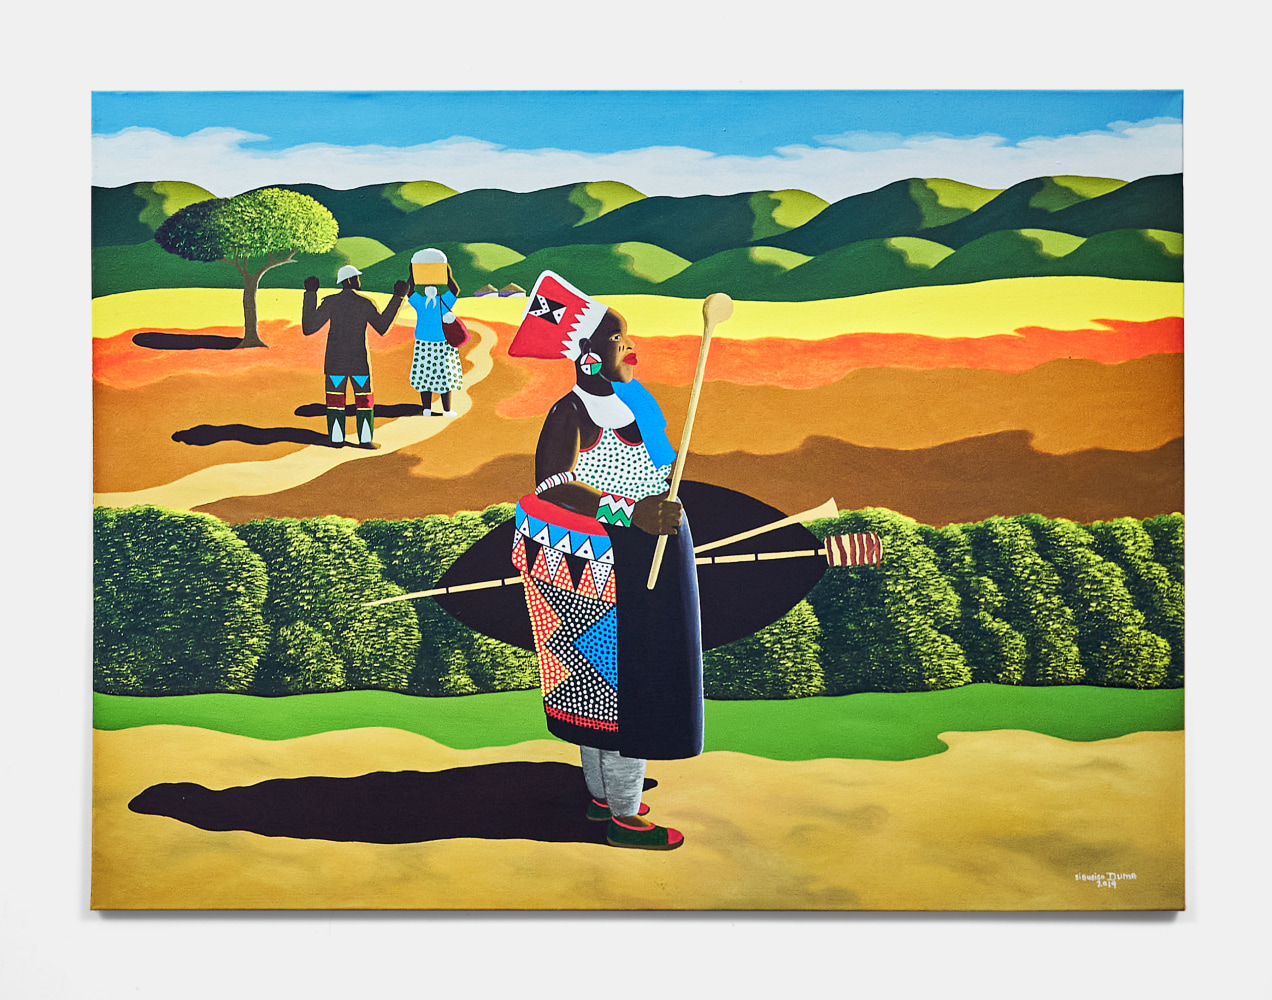 Sibusiso Duma
Zulumama, 2019
Acrylic on canvas
30.31h x 40.16w in
77h x 102w cm